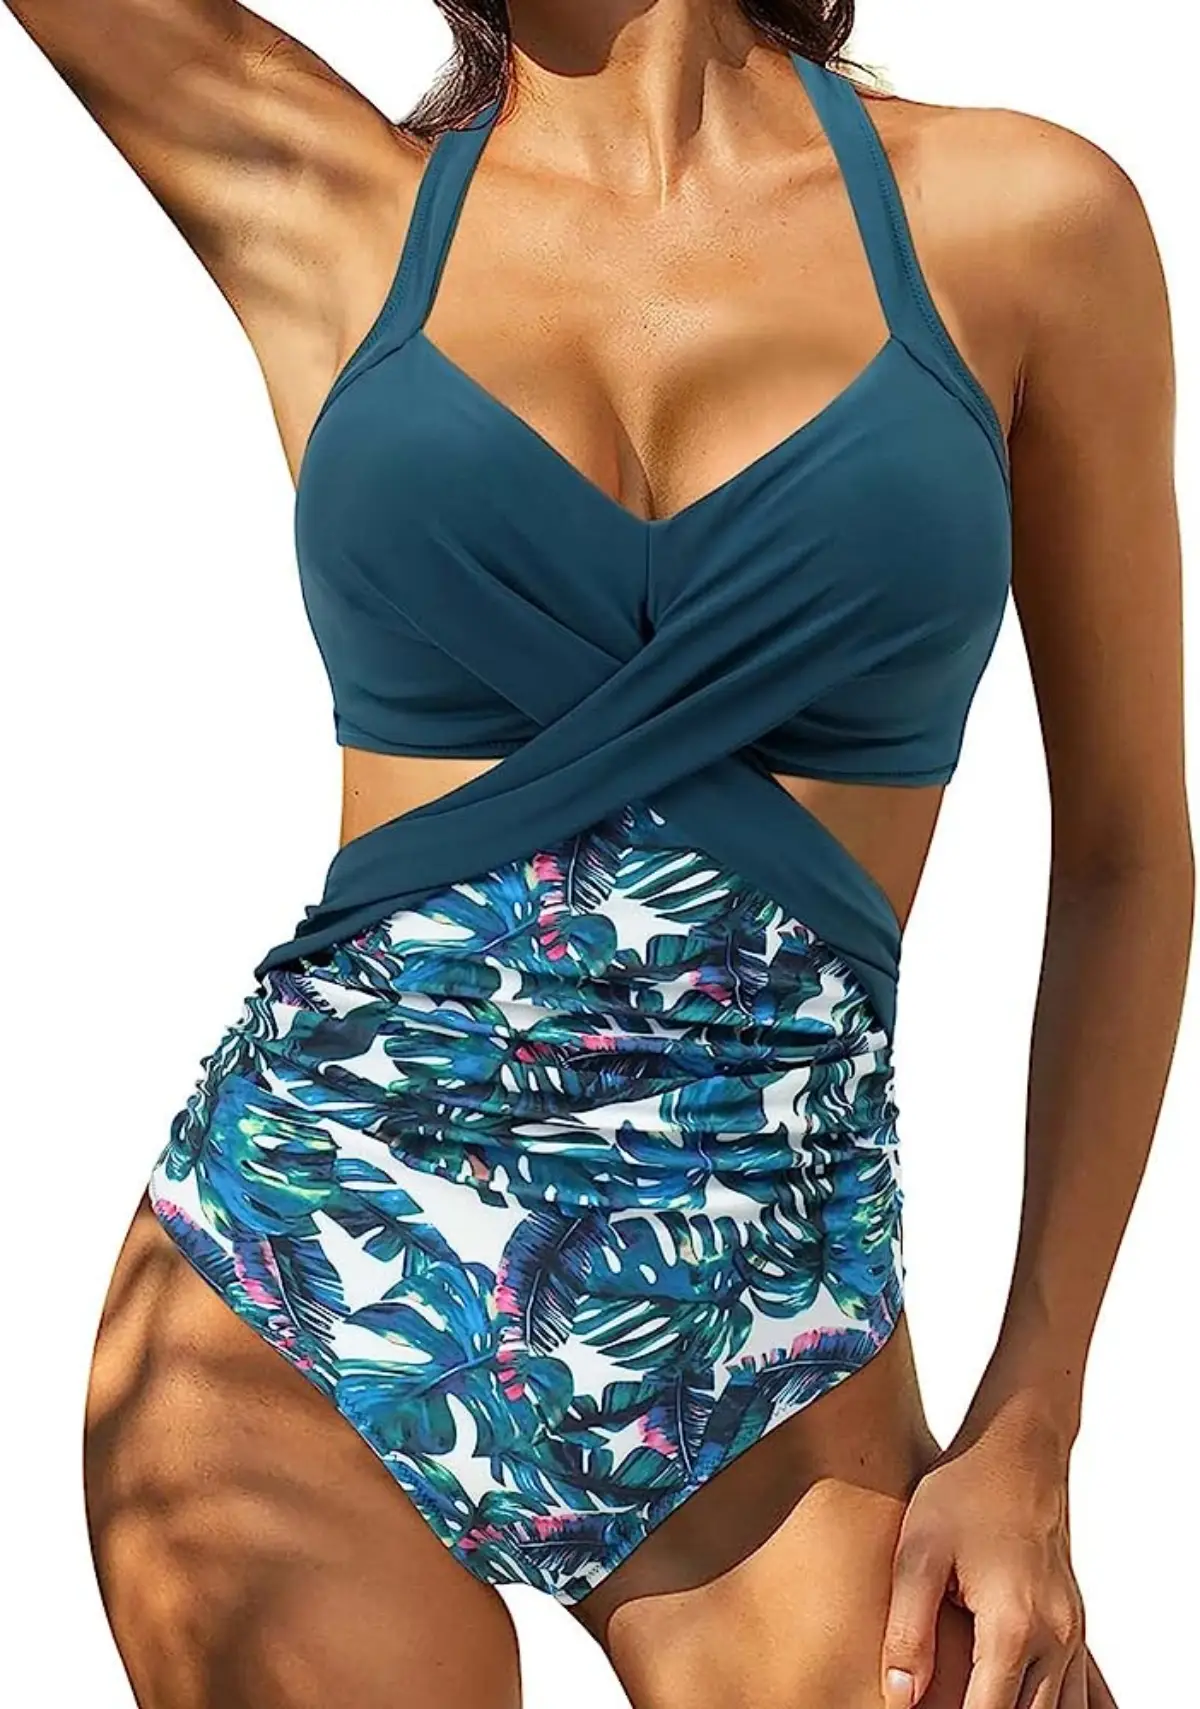 badeanzug figurwunder bikini fuer frauen ab 50 frau mit bauch in badeanzug mit ausschnitt ueber der taille blaue farbe